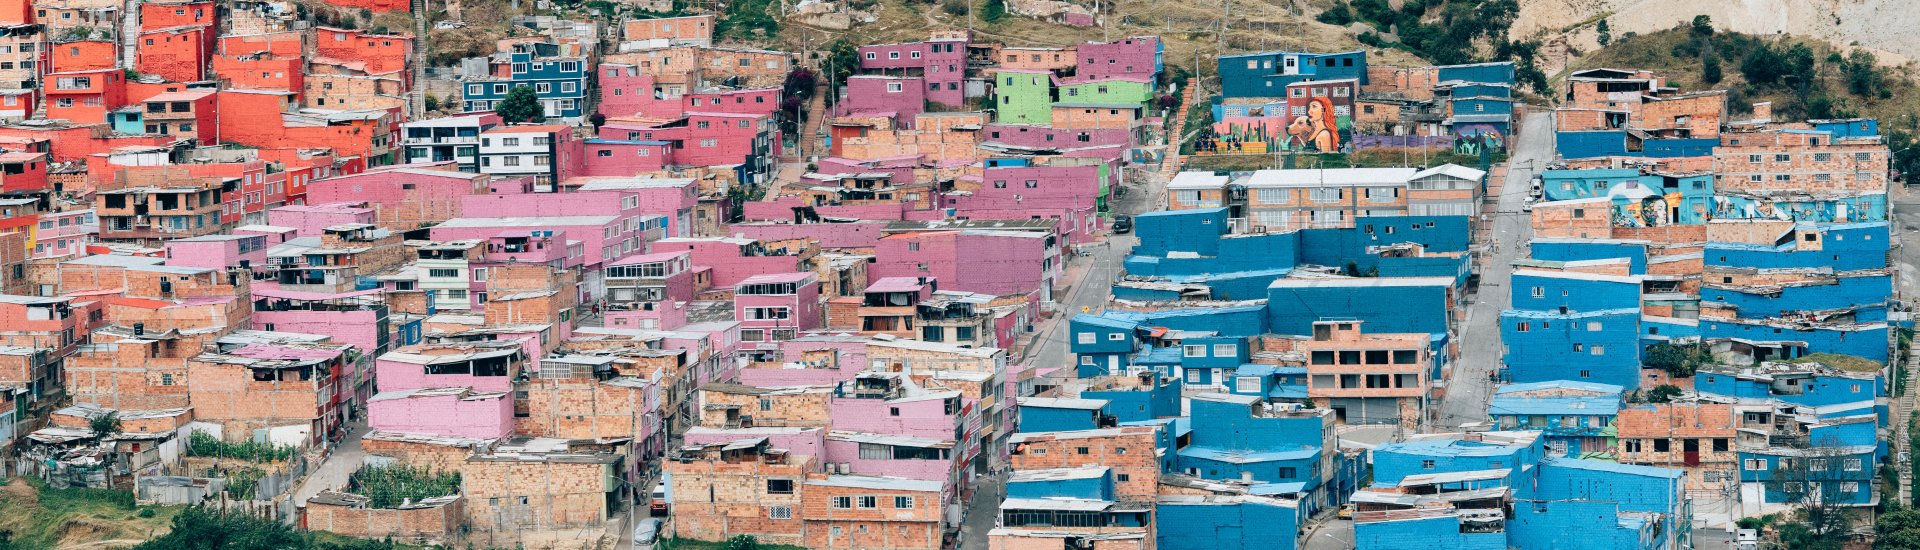 Een gedeelte van de stad Bogotá in Colombia.